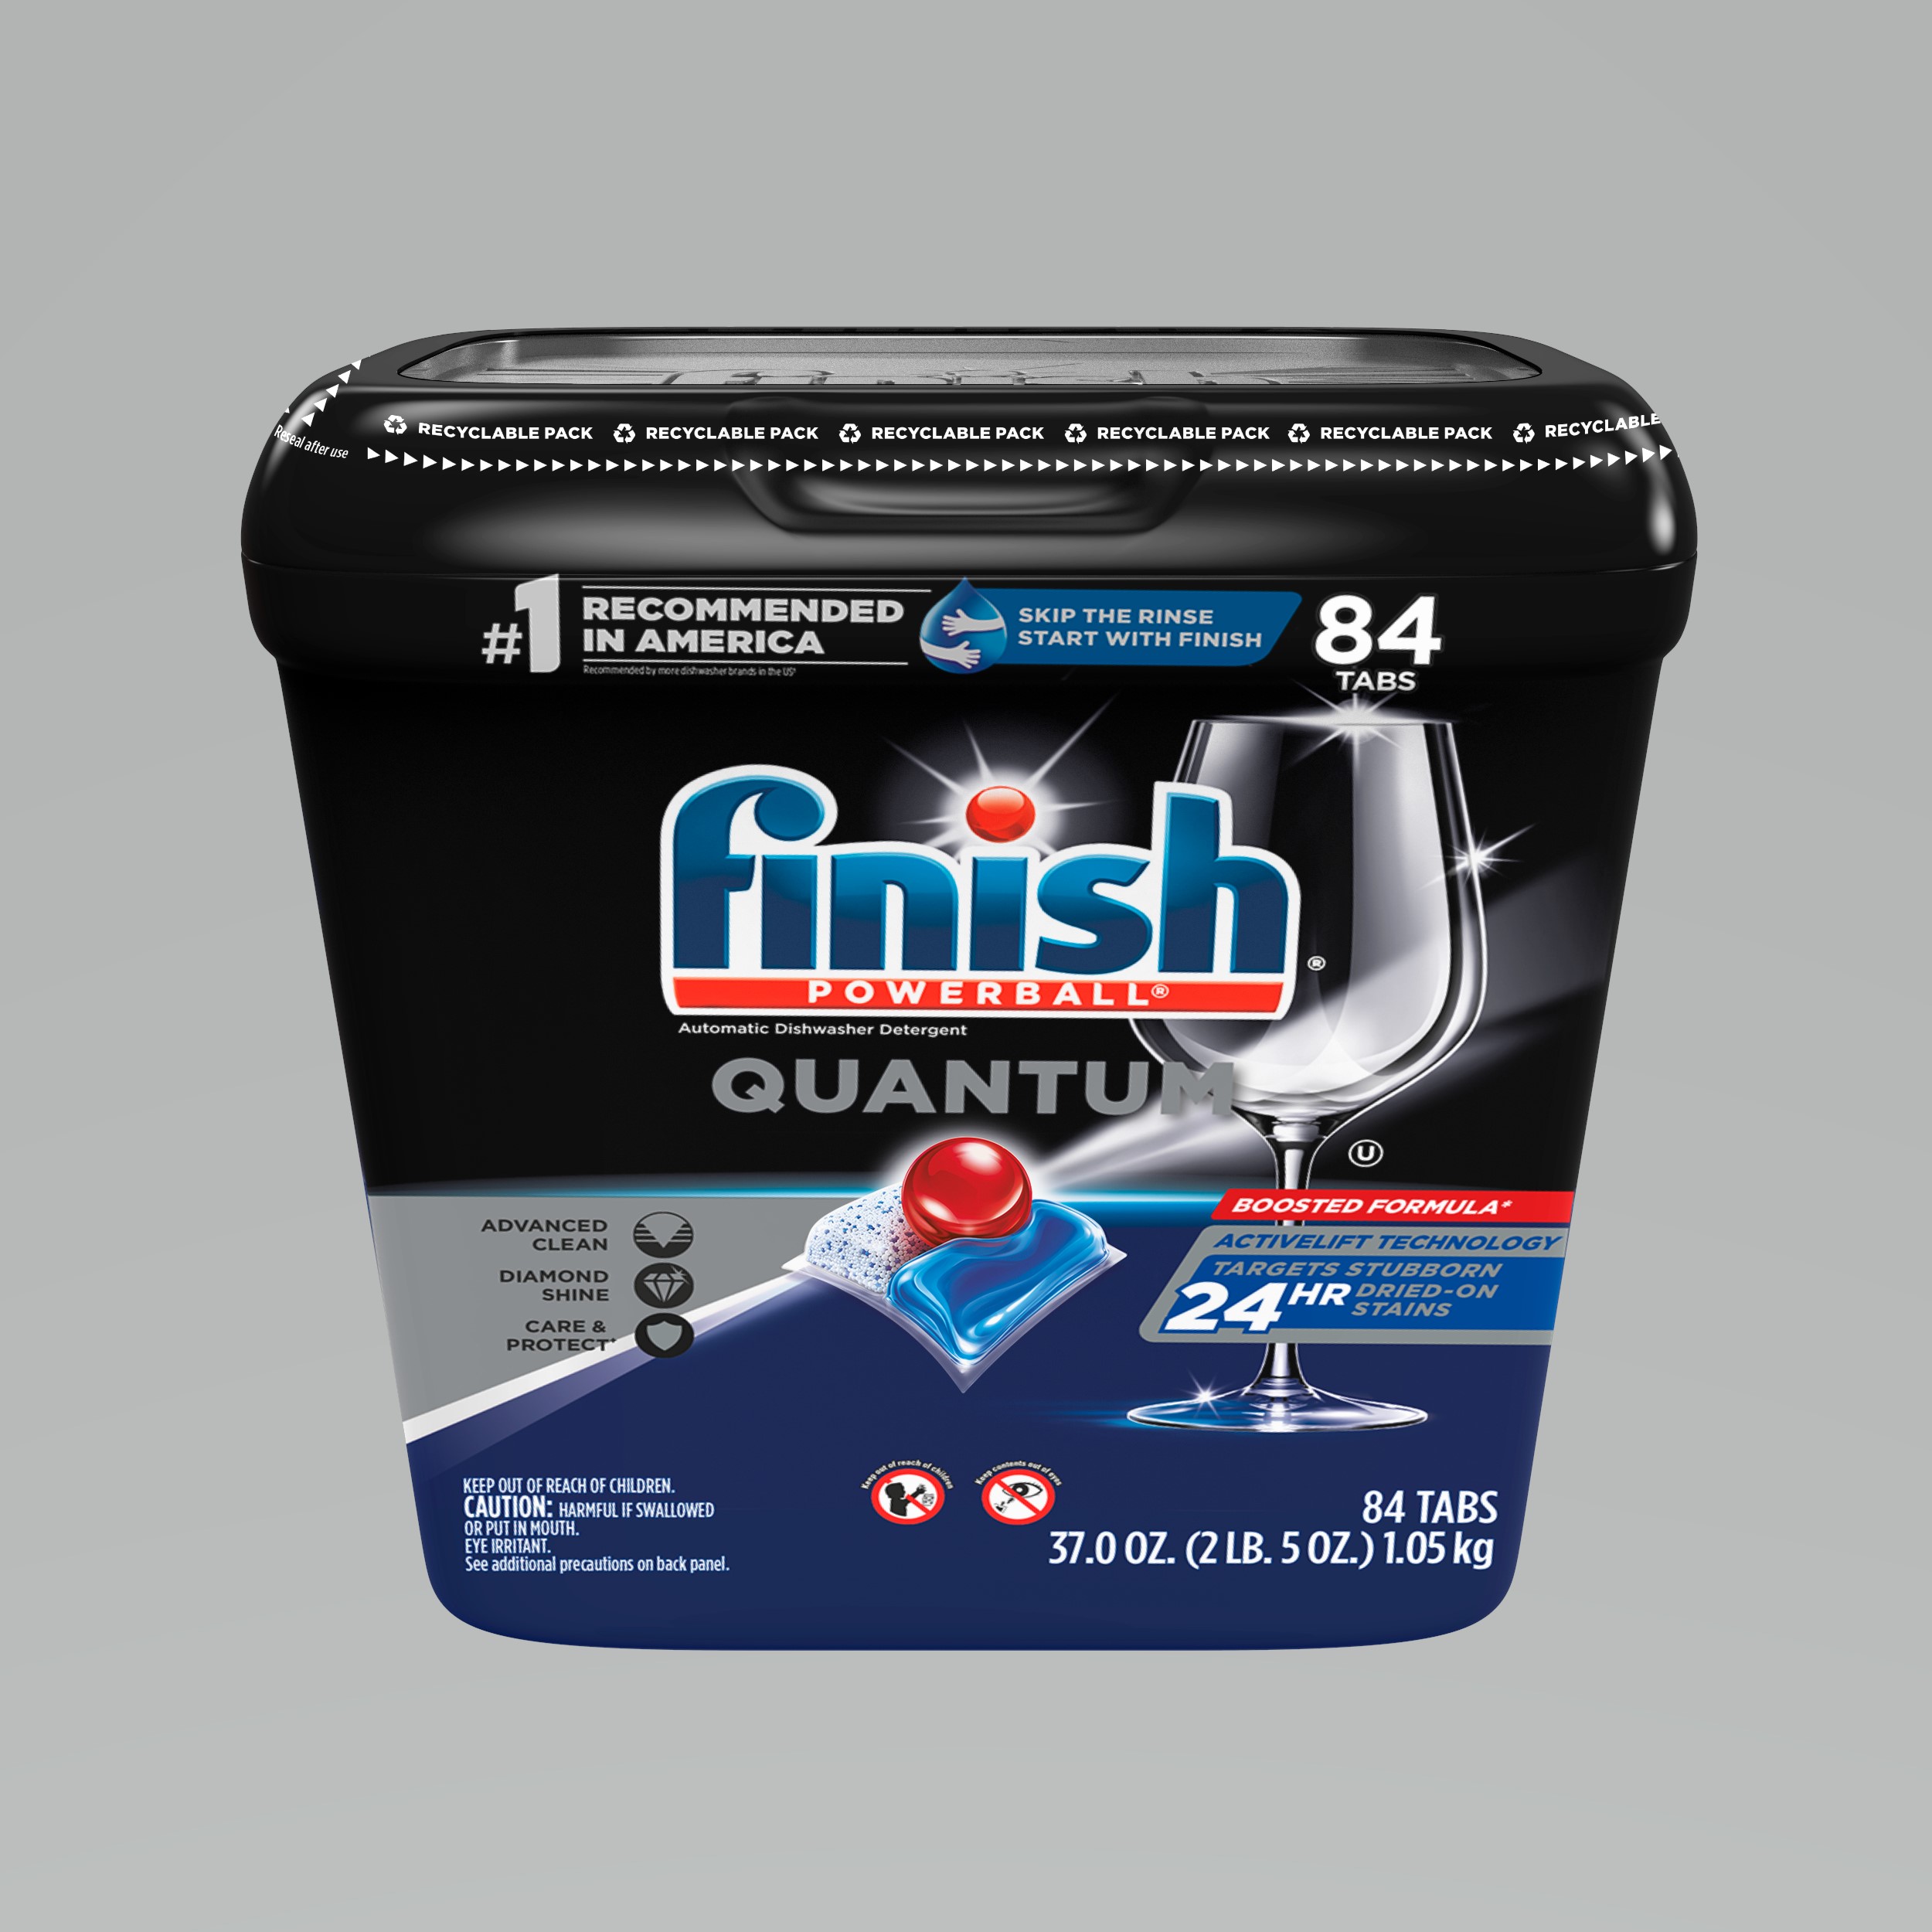 FINISH Classic Powerball Regular Détergent pour Lave-vaisselle 1 Unité